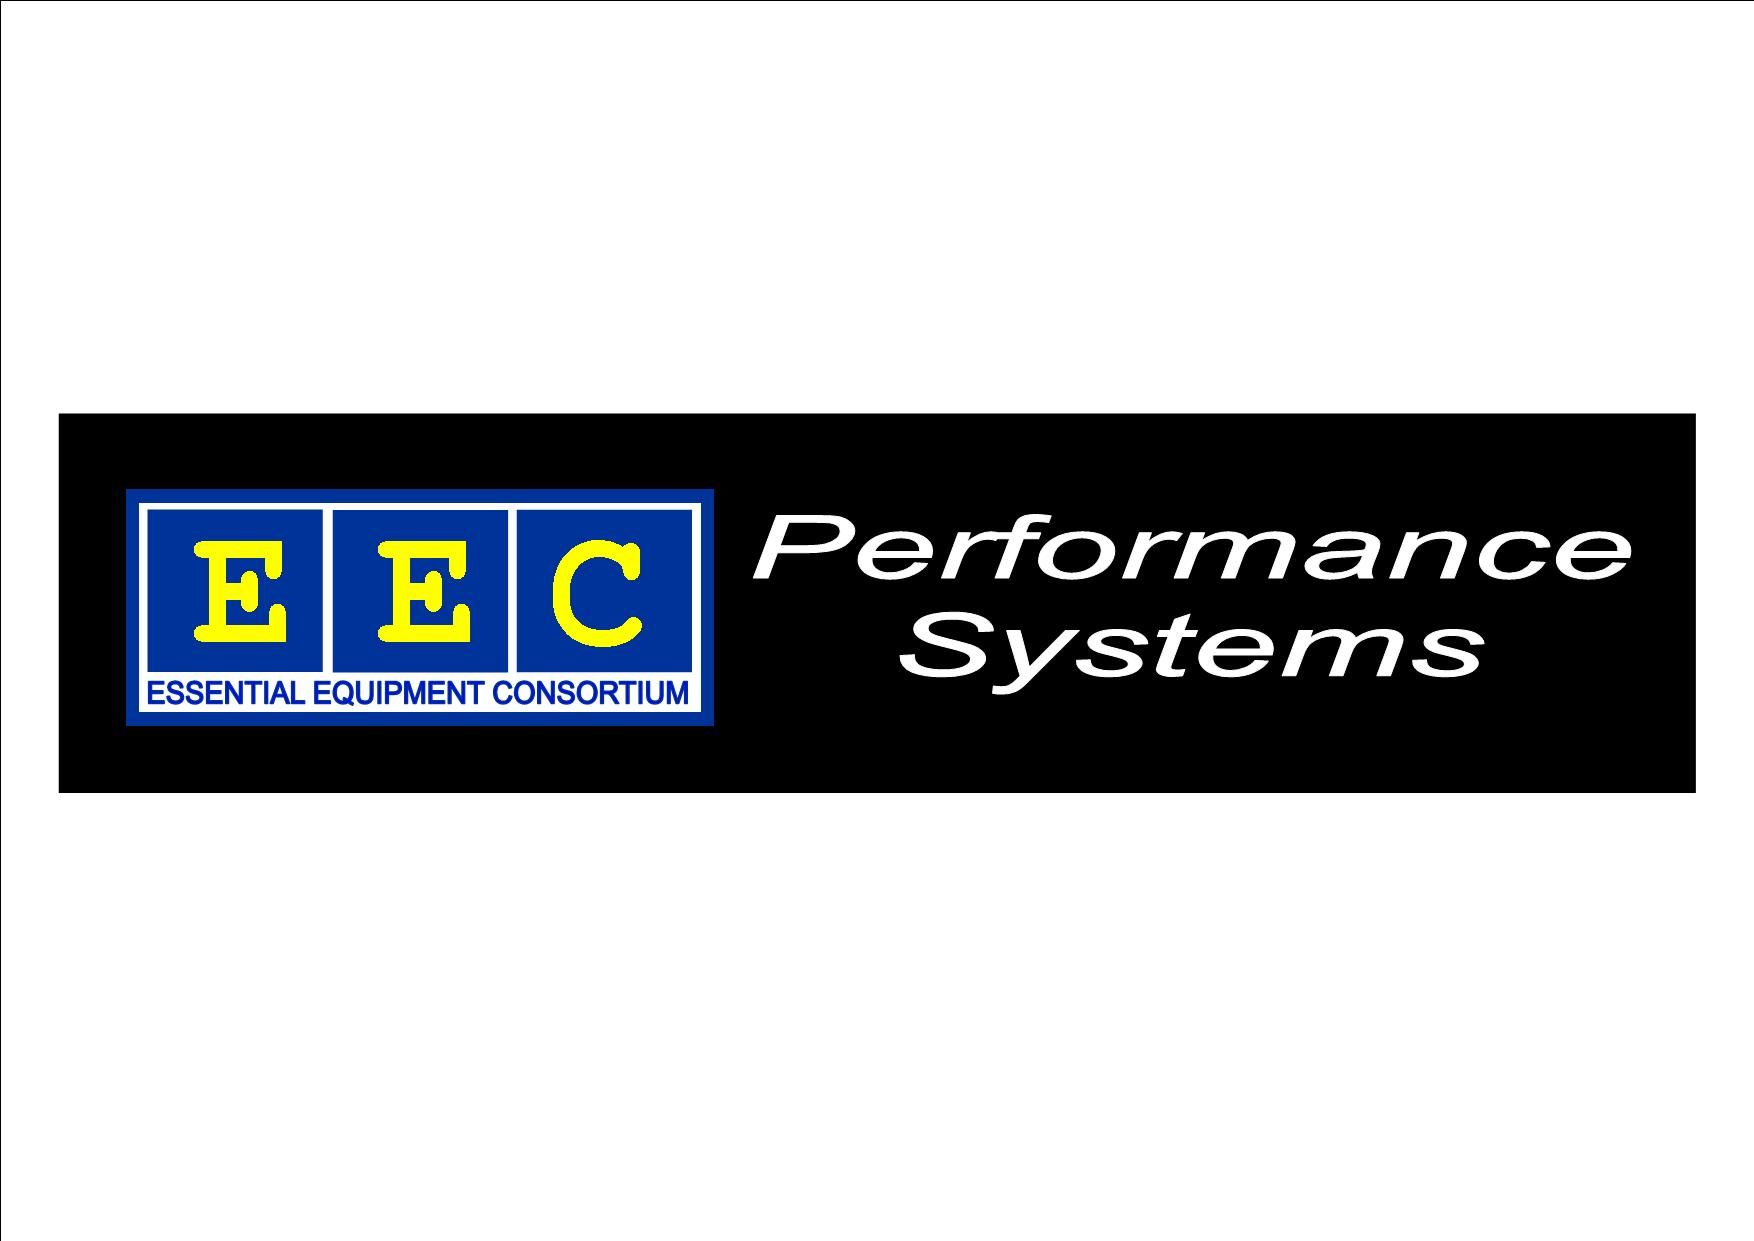 EEC Ltd